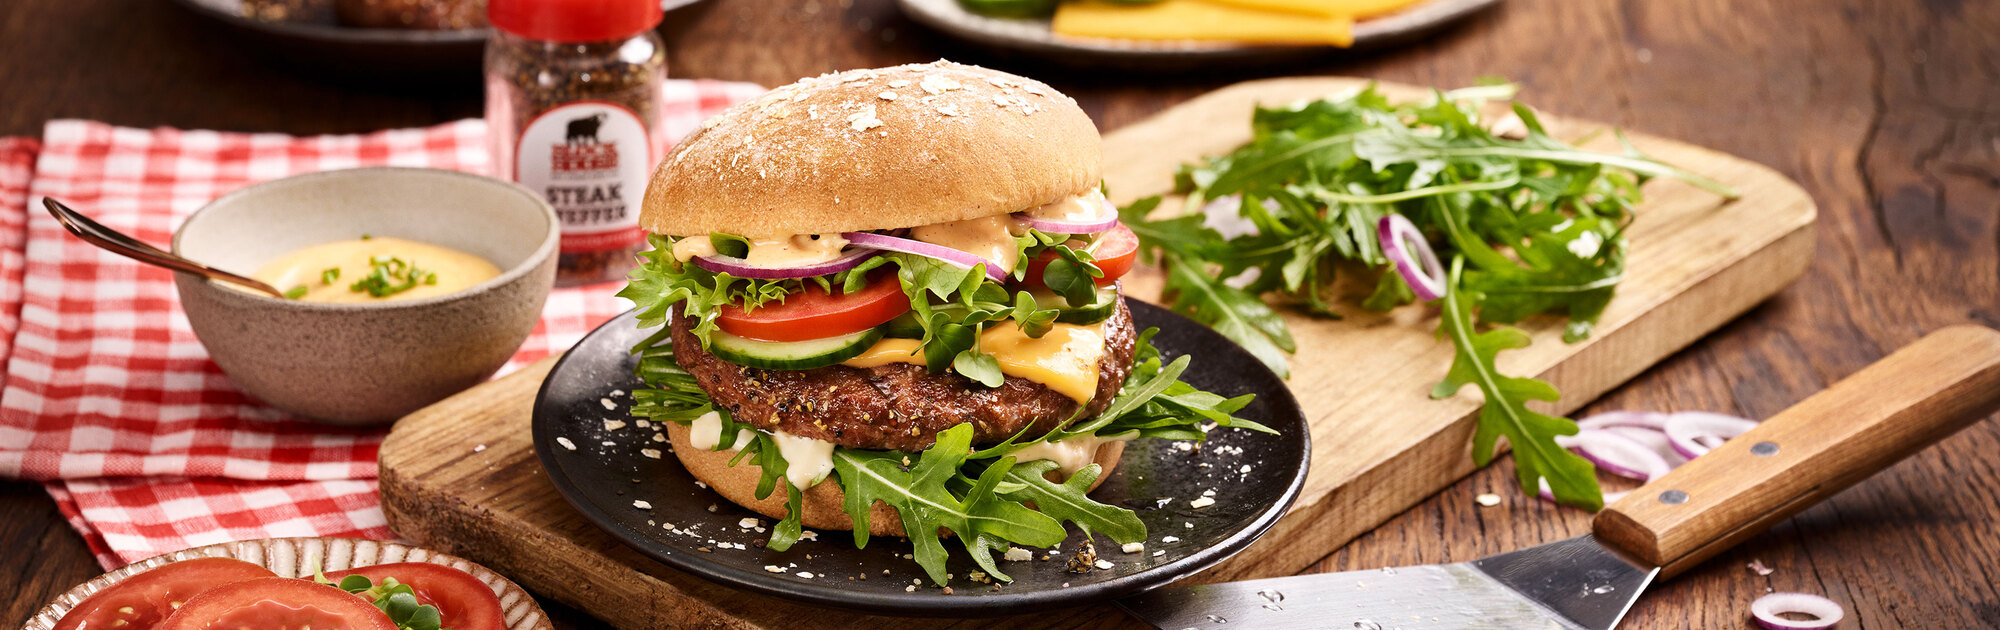 BLOCK HOUSE Bio-Burger mit Rindfleischpatty auf einem Teller serviert